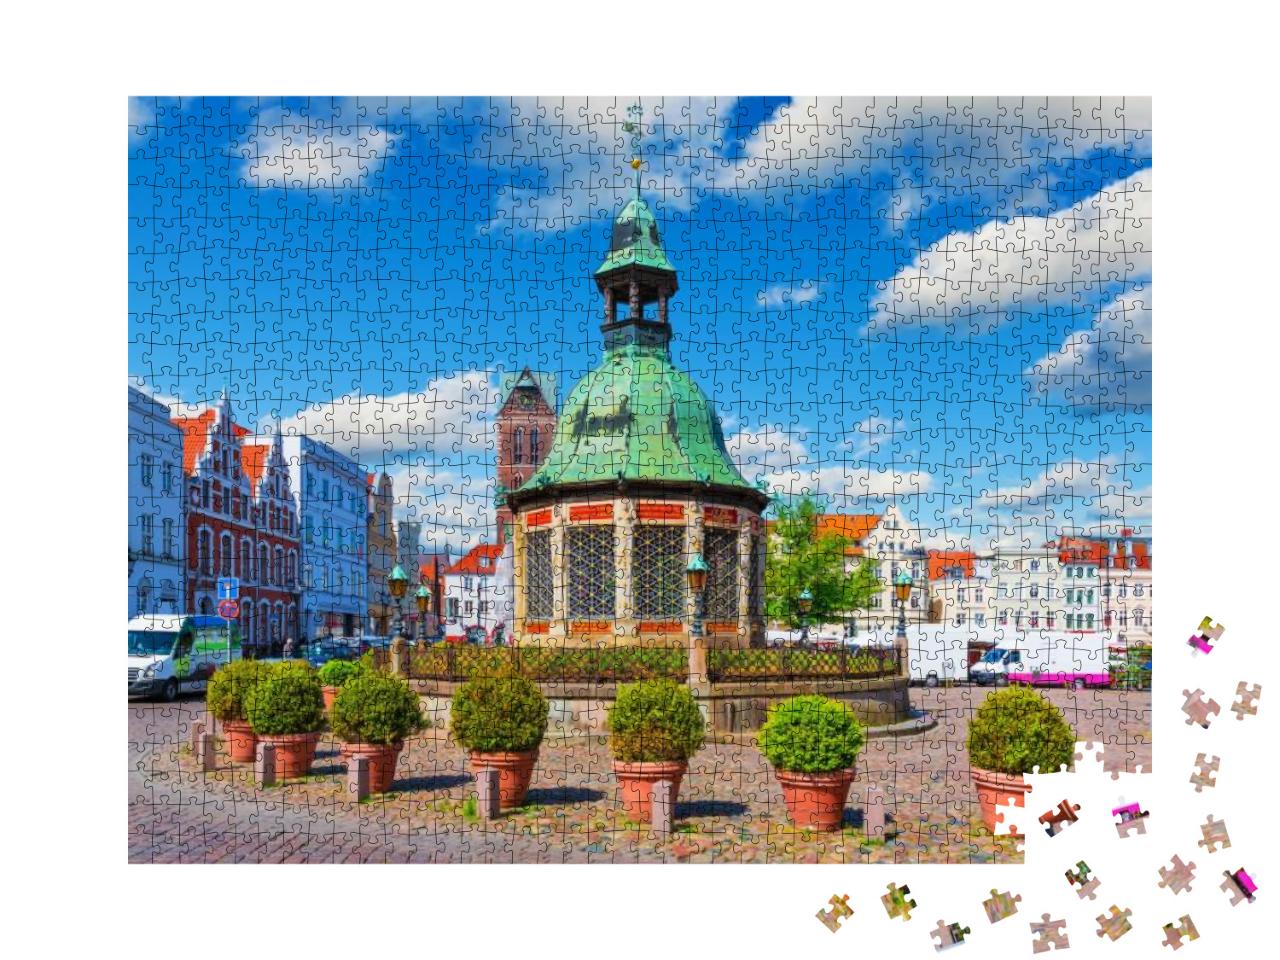 Puzzle 1000 Teile „Marktplatz in der Altstadt von Wismar, Deutschland“